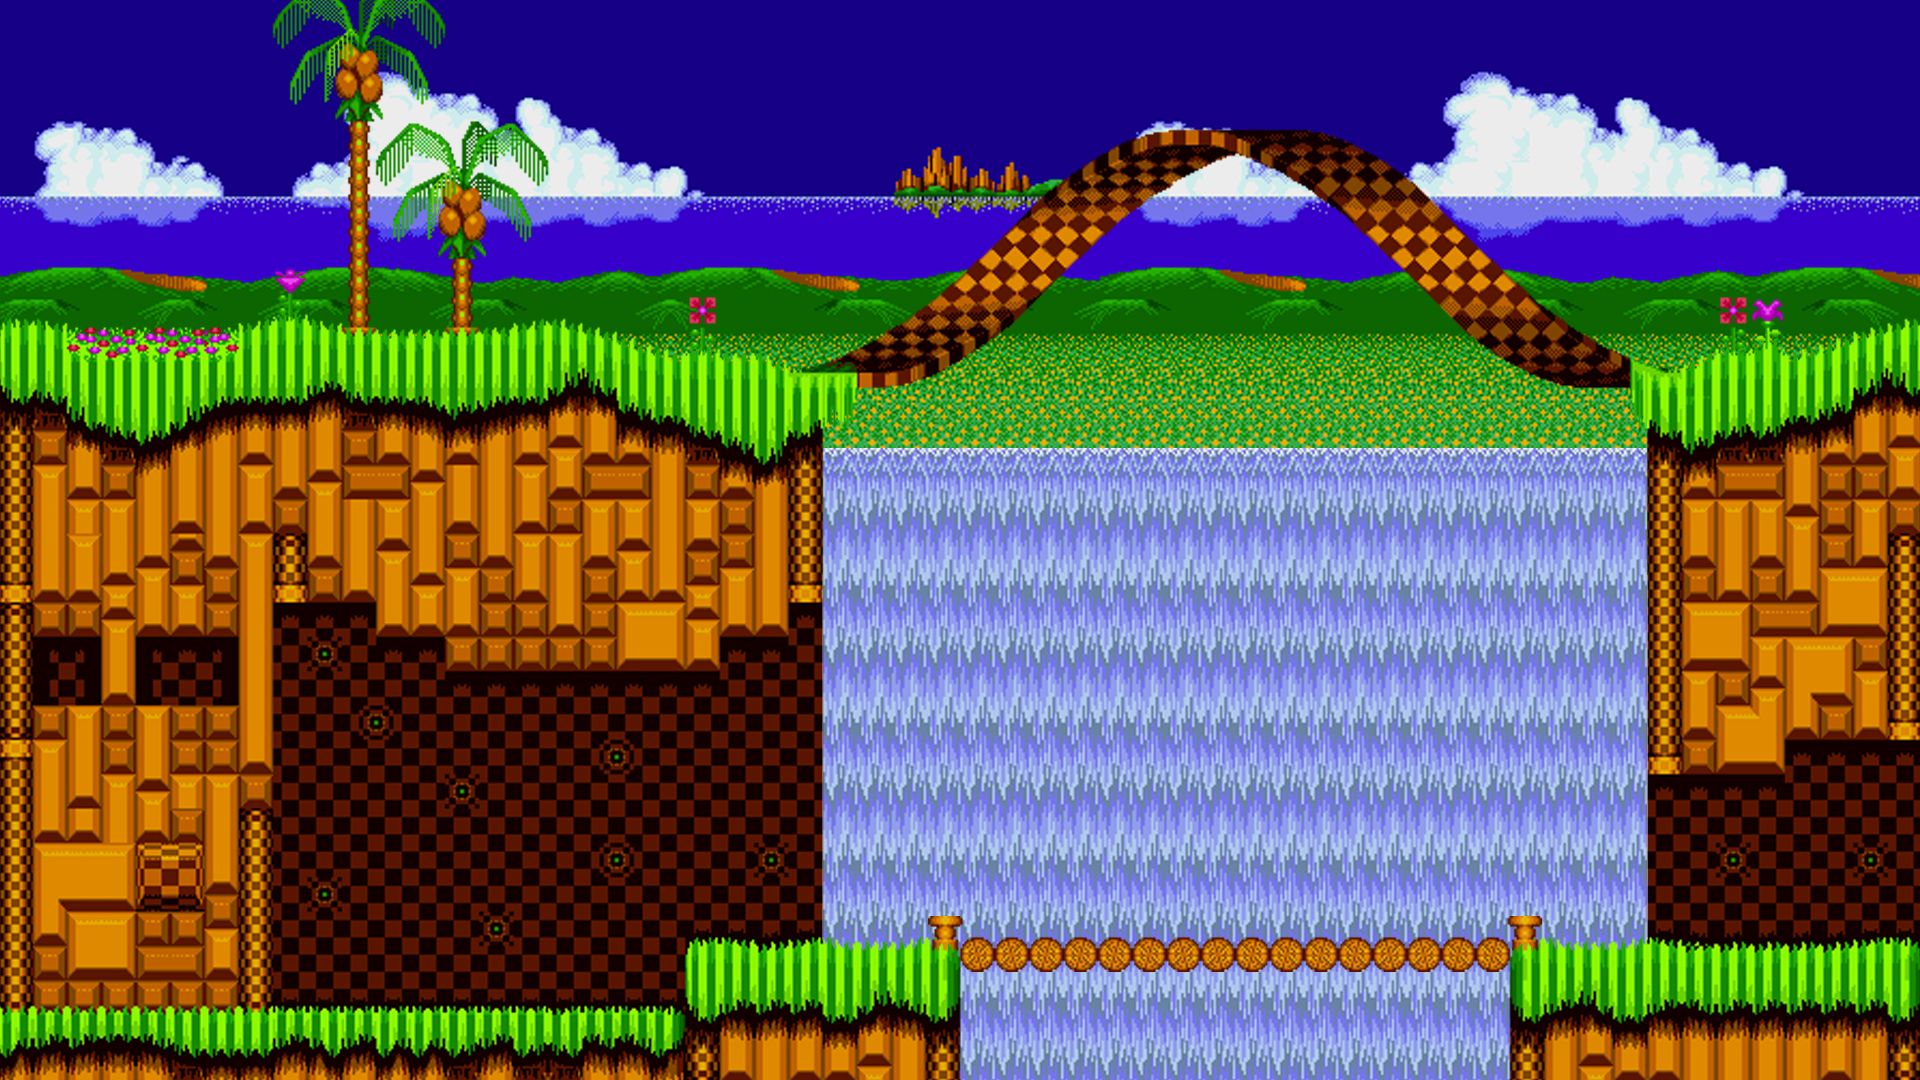 Những hình nền Sonic Games trên Wallpaper Cave sẽ khiến bất kỳ fan của Sonic nào cũng phát cuồng với màn hình rực rỡ sinh động. Bạn có thích The Hedgehog không? Hãy xem hình ảnh liên quan và biến chiếc máy tính của bạn thành một cuộc phiêu lưu đầy màu sắc.